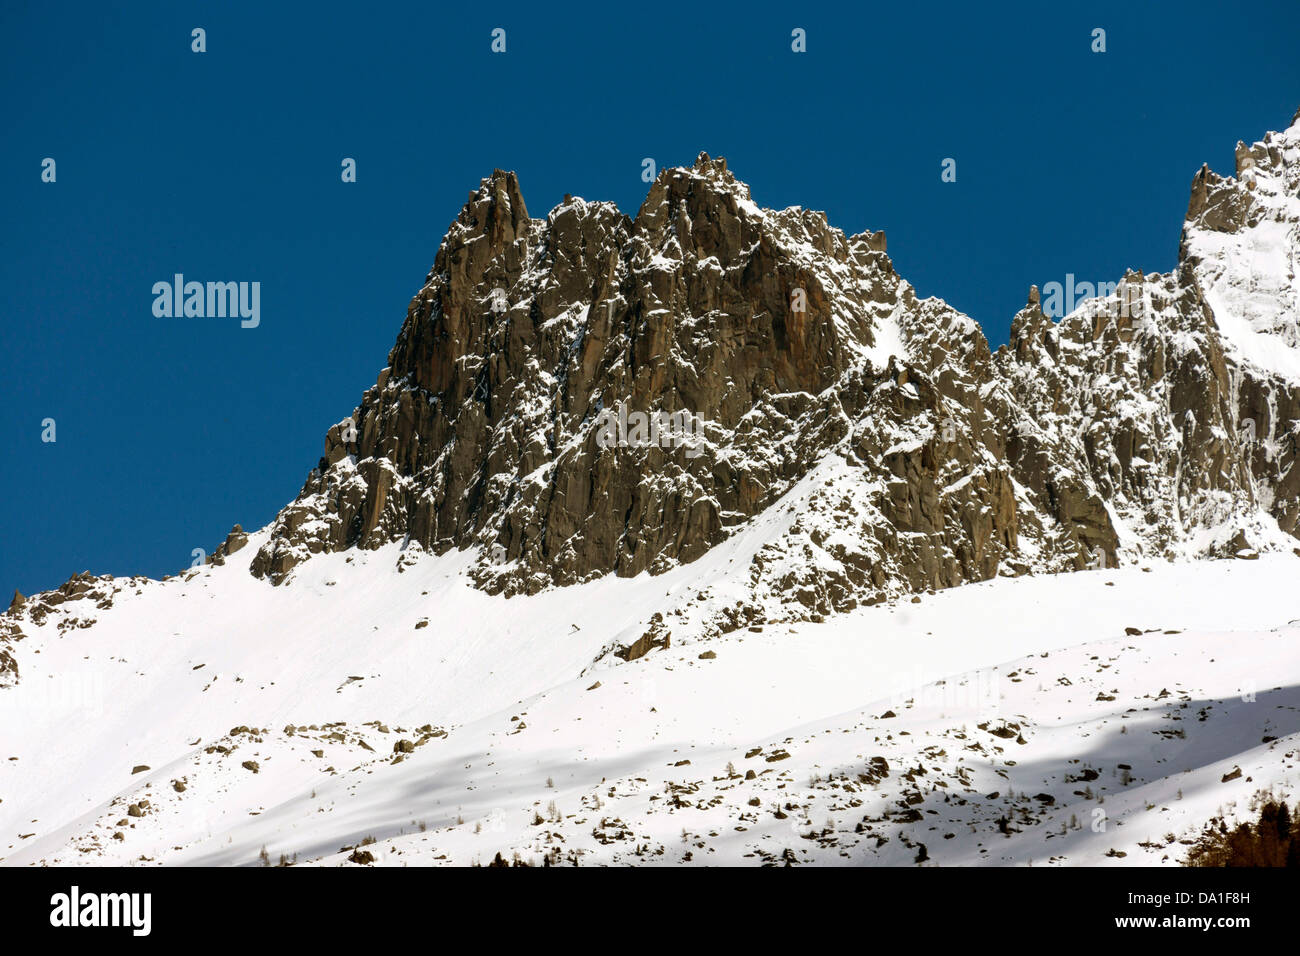 Aiguille de l'M seen from Chamonix Mont Blanc Stock Photo